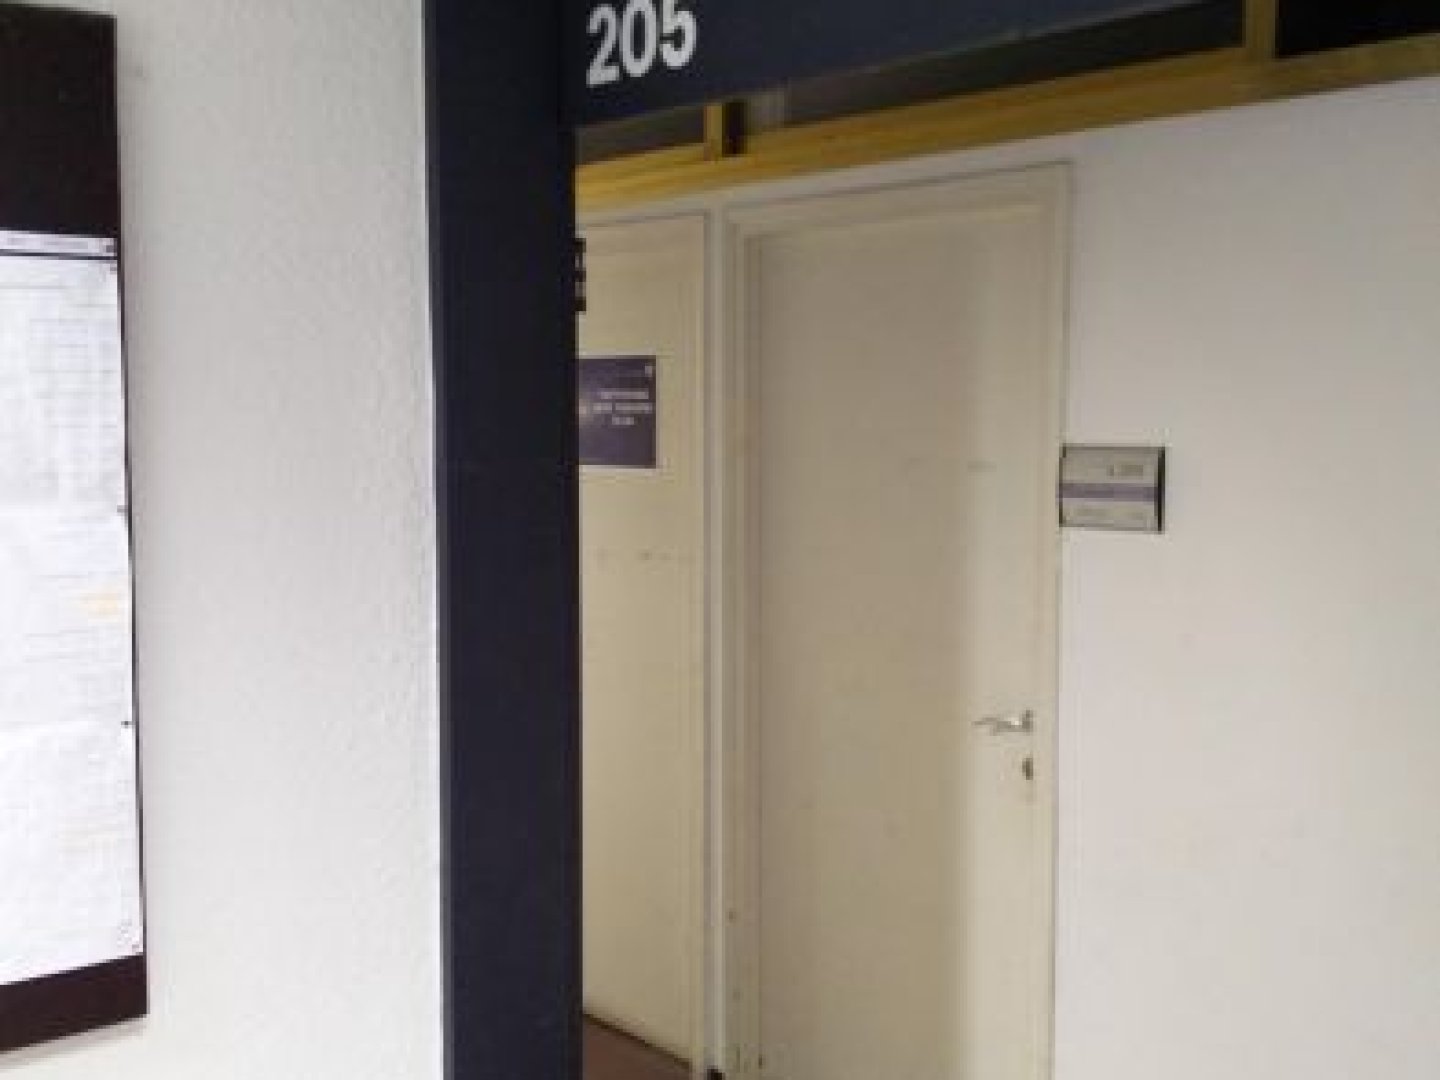 אוניברסיטת תל-אביב - רוזנברג - מדעי היהדות - חדר 205 - תמונה 1